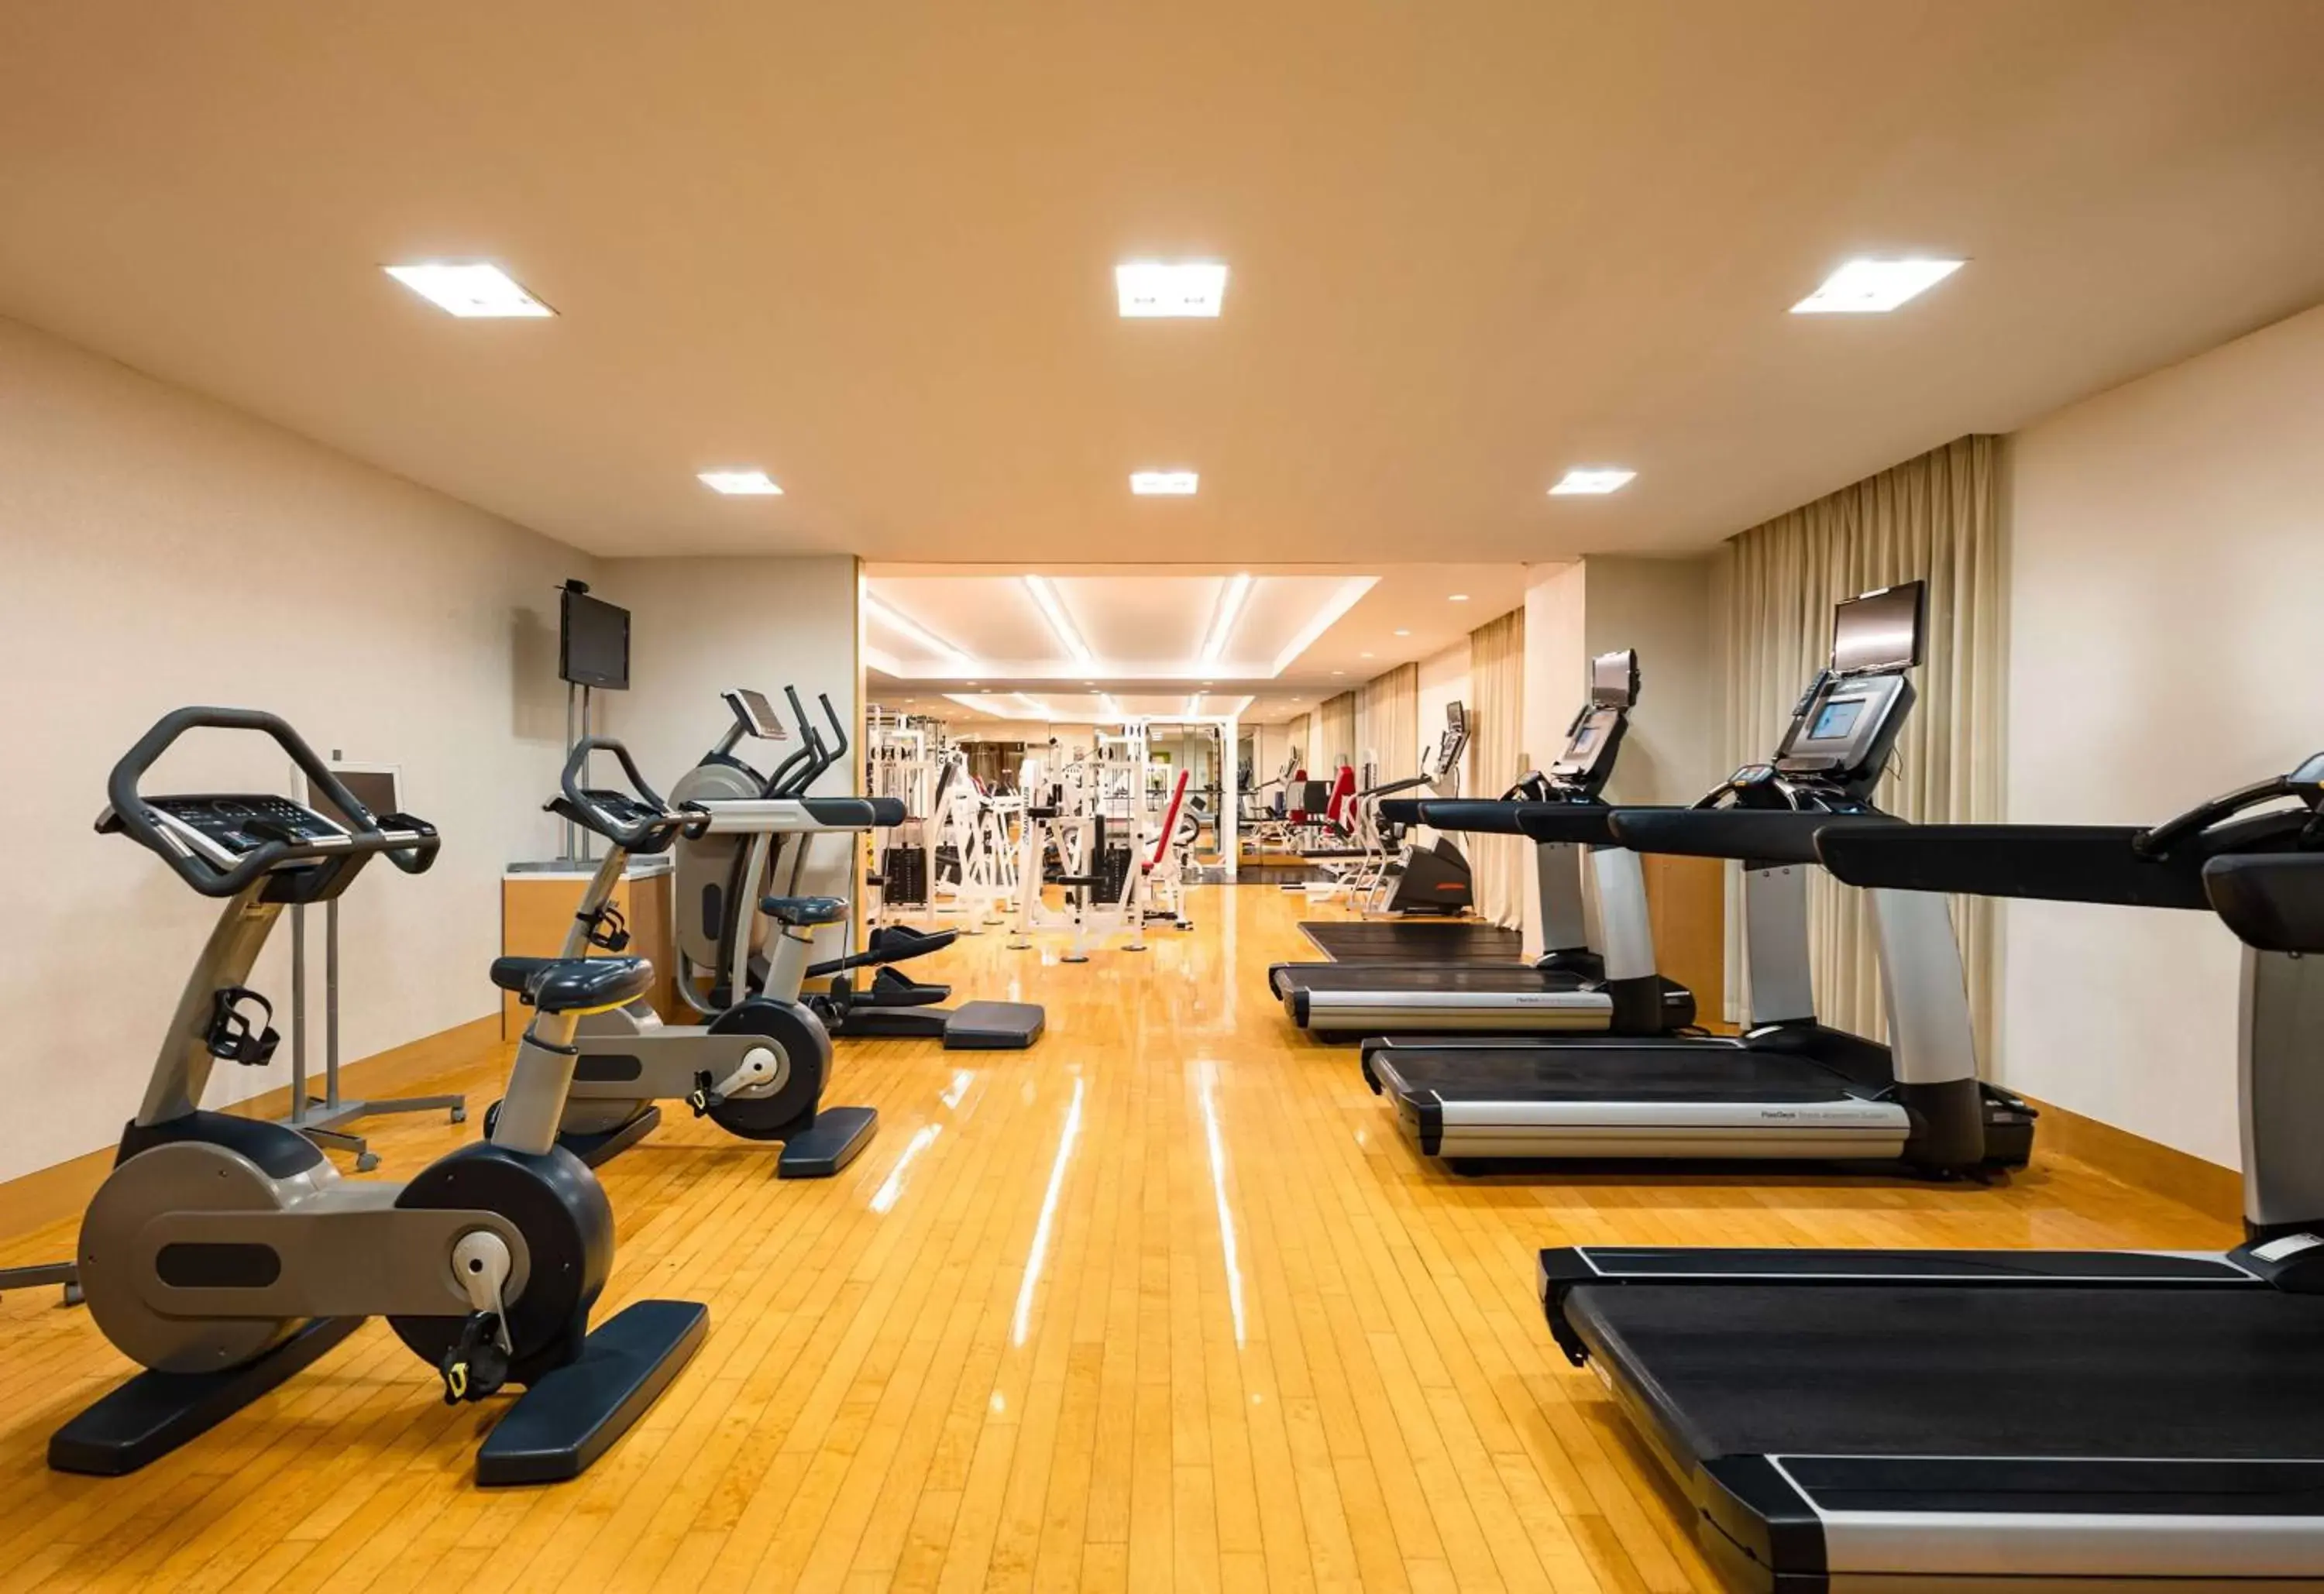 Fitness centre/facilities, Fitness Center/Facilities in Grand Hyatt Fukuoka